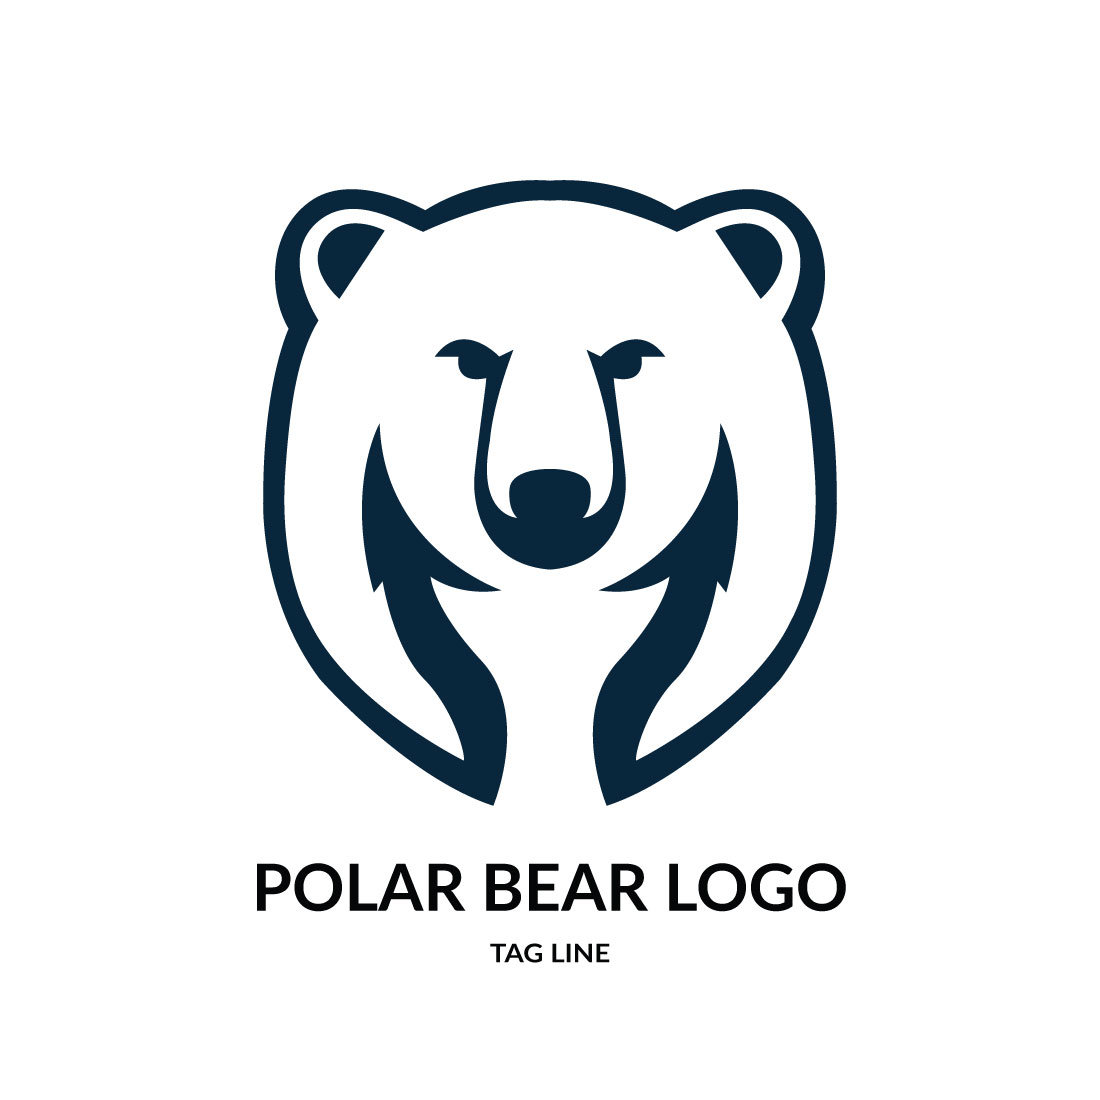 Polar bear logo Template preview image.